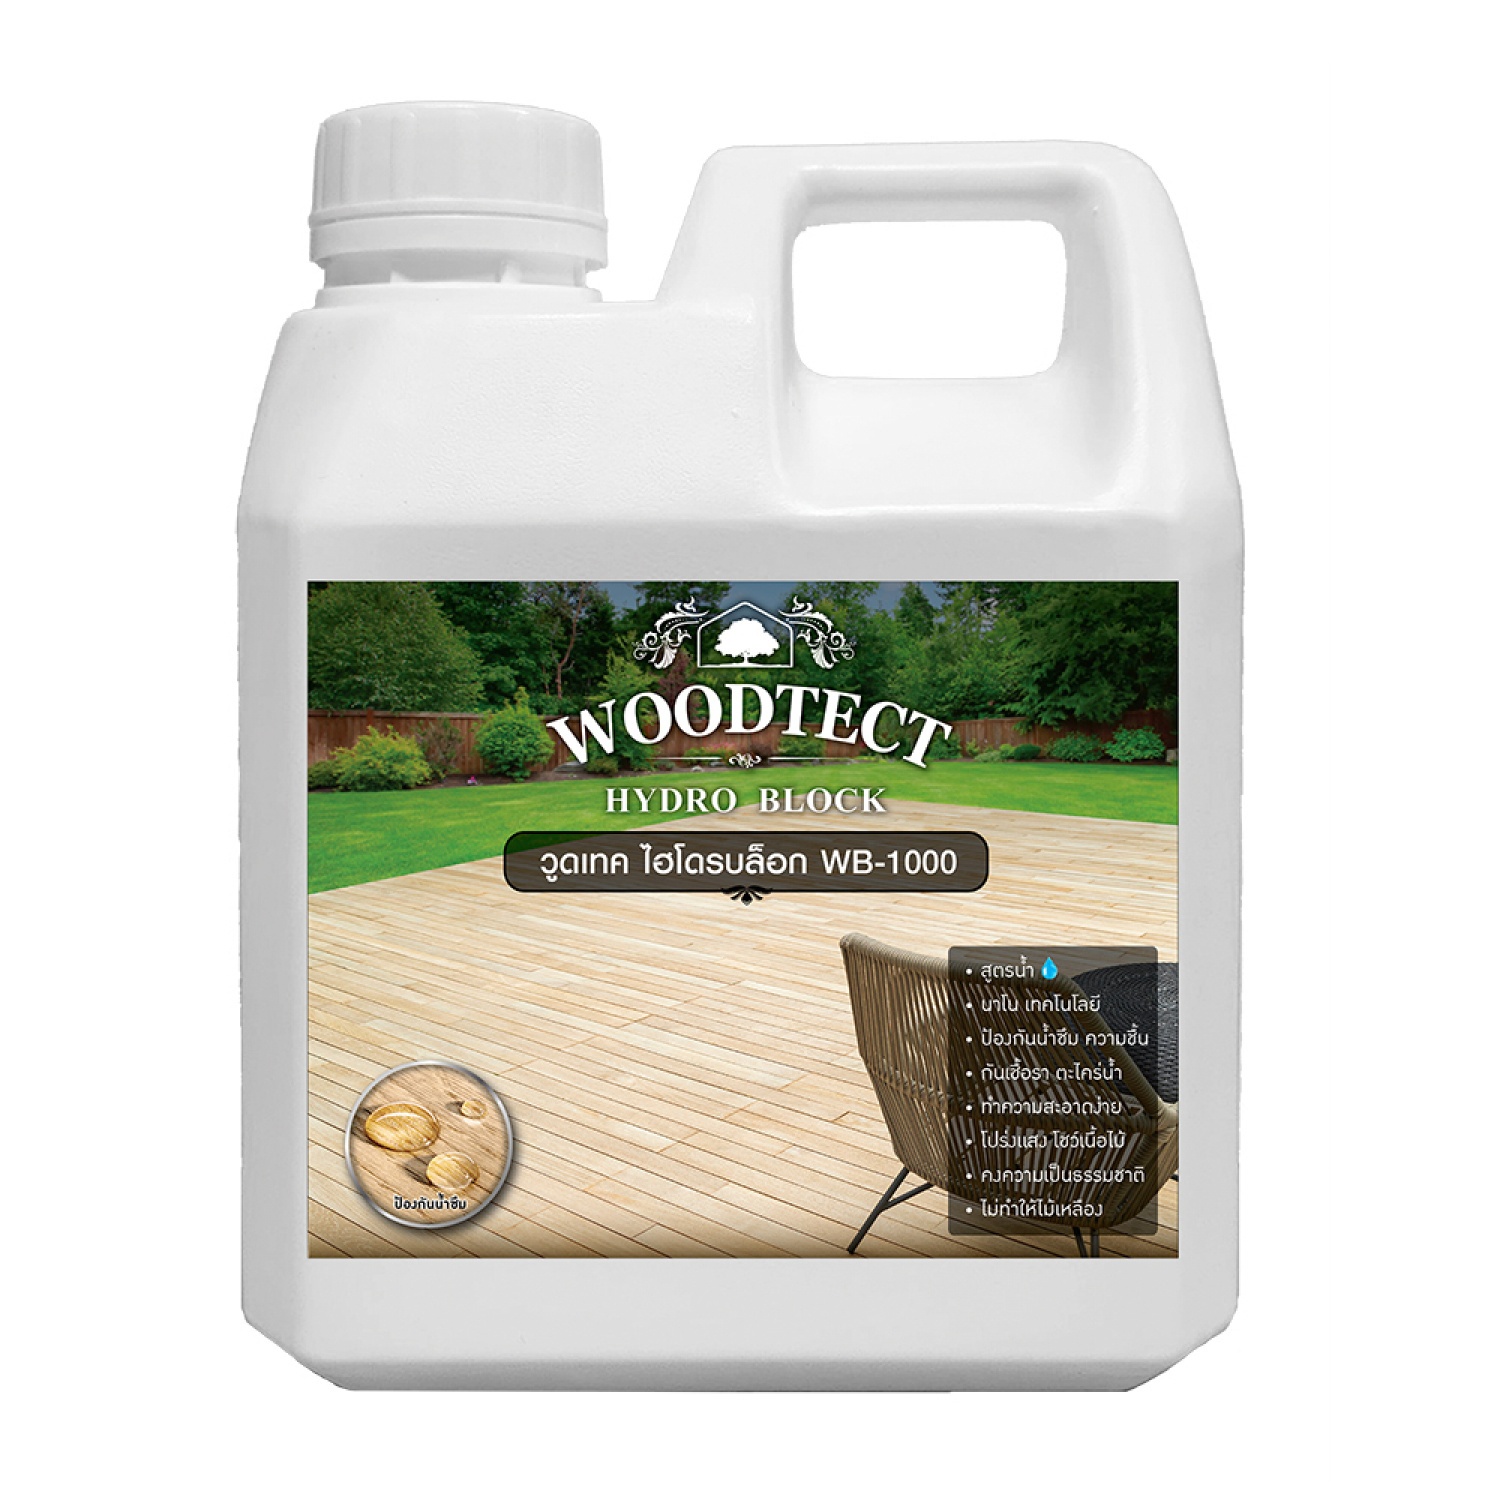 Woodtect เนเชอรัล ชีล  WB-1000  0.8 ลิตร